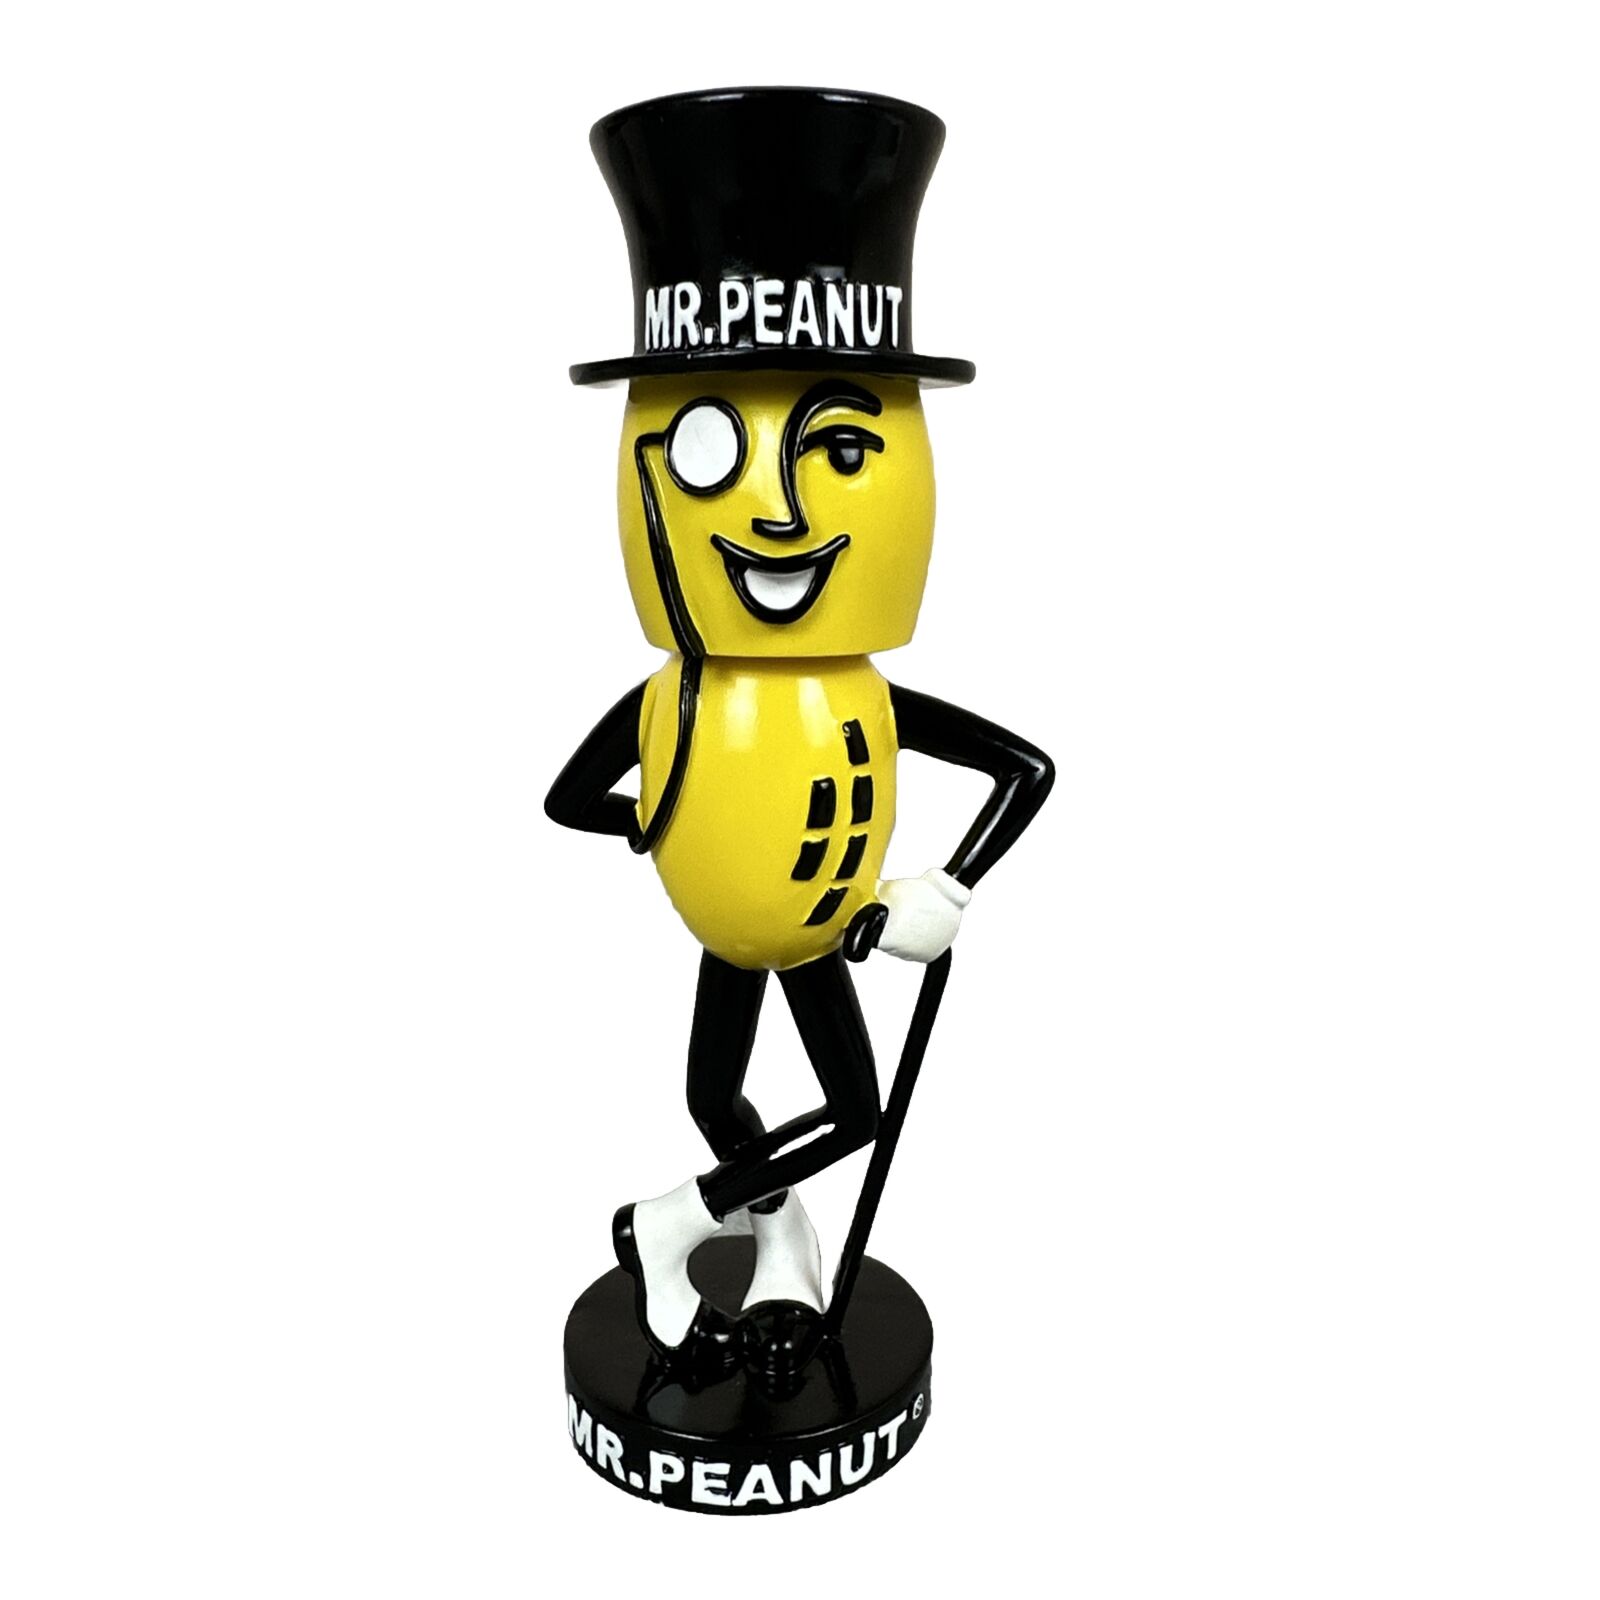 Mr. Peanut Bobble Head 6.25” Tall Planters Nuts Vintage